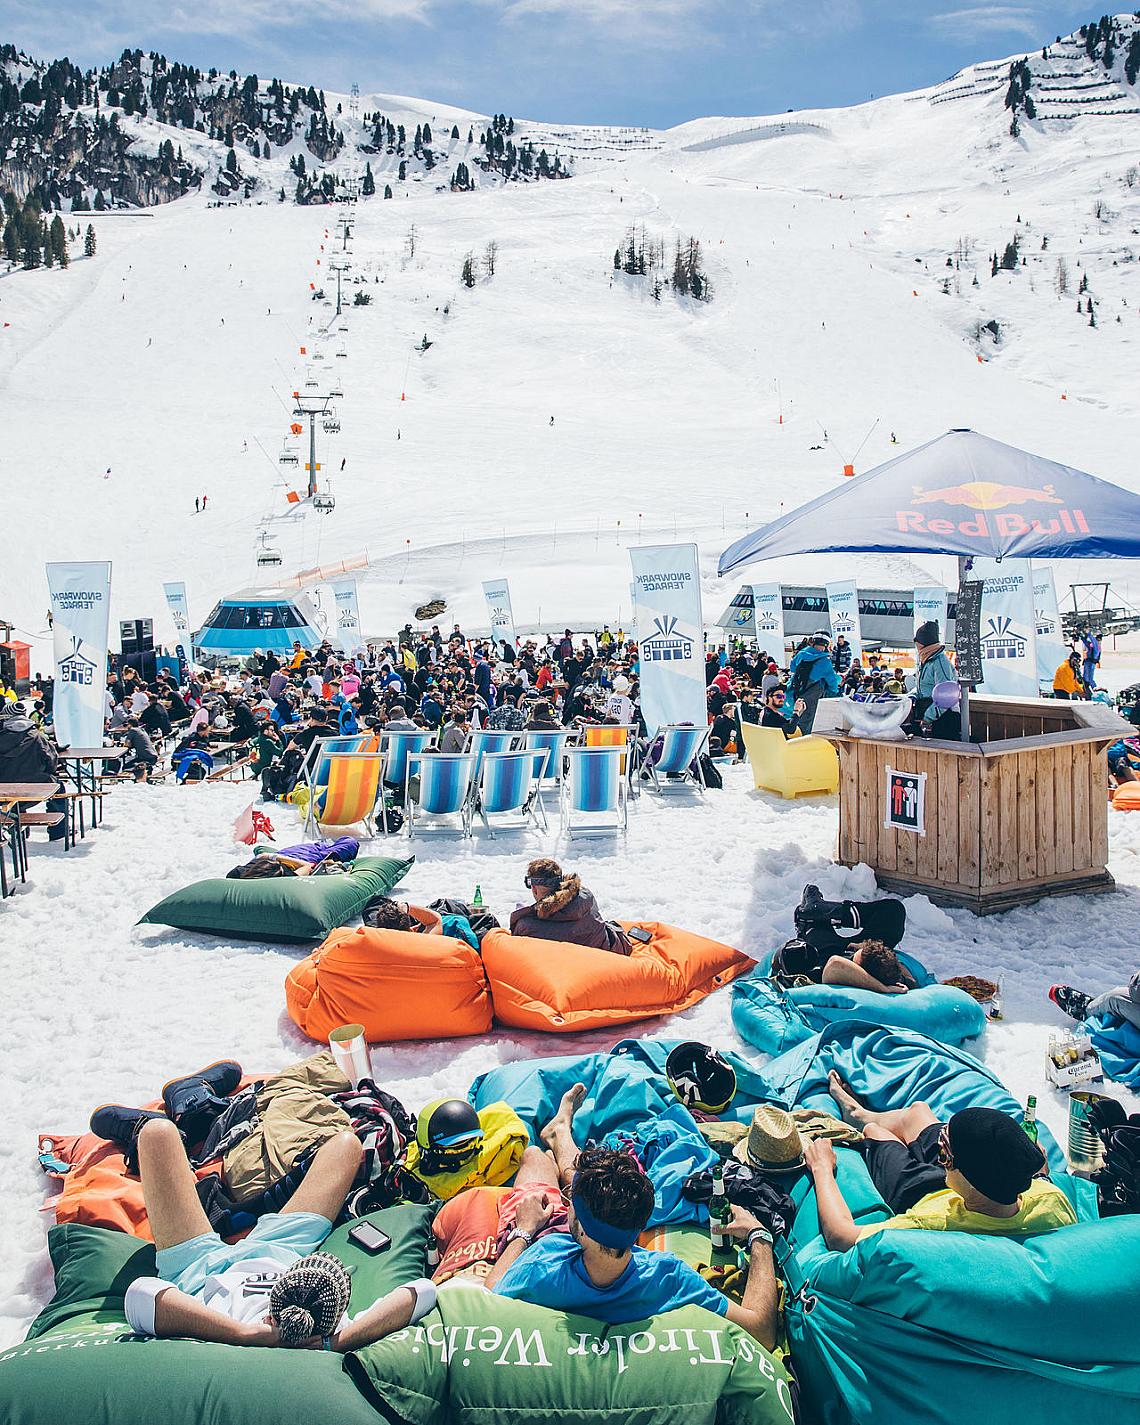 &lt;p&gt;&lt;strong&gt;Фестивалът
Snowbombing в ски курорта
Майрхофен, Австрия (13-18
април 2020 г.)&lt;/strong&gt;&lt;/p&gt;&lt;p&gt;Този
музикален фестивал се провежда от 21
години в Тиролските Алпи. Обхваща 7
луди дни и нощи, изпълнени с
музика и планински забавления. Едни
от най-горещите имена в електронната
музика пеят на сцени на открито
по снежните склонове и покачват градуса на настроението до
сериозни висоти.&lt;/p&gt;